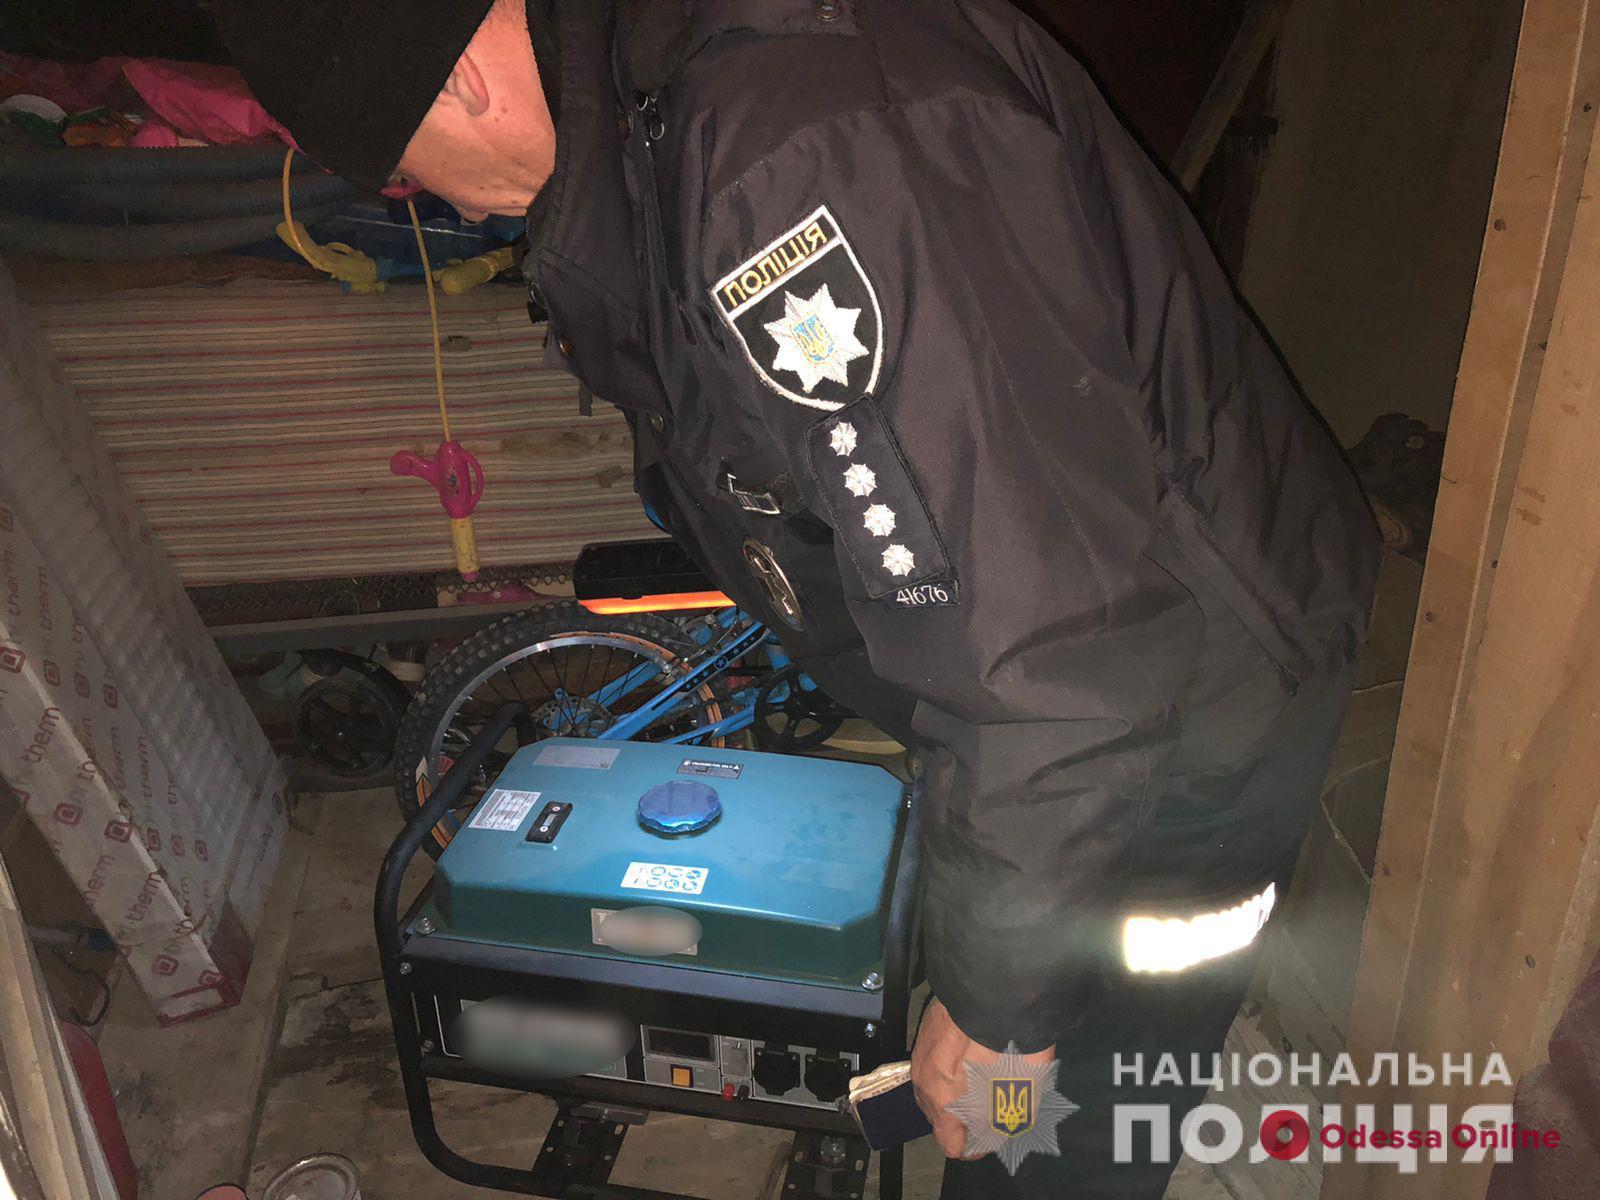 Гибель пяти человек в доме в Одесской области: семья несколько дней жила без электричества